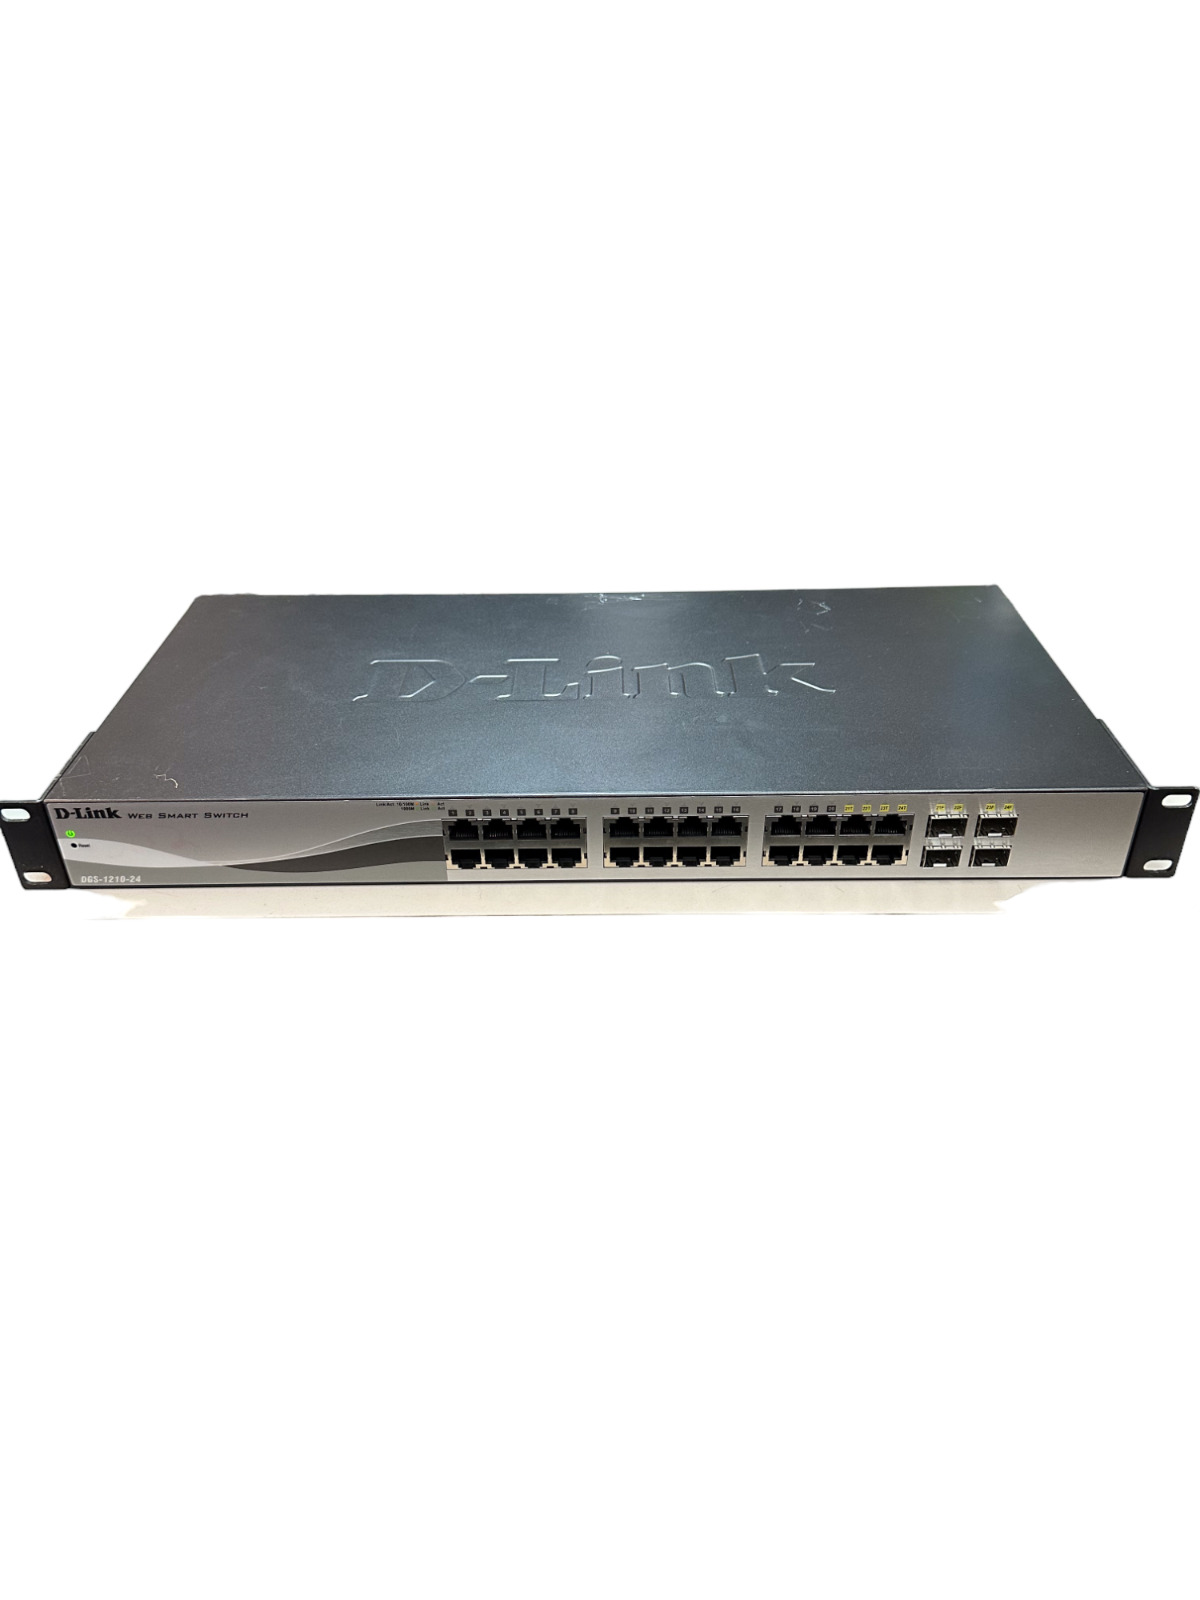 D-Link DGS-1210-24 24-Port Gigabit Web Smart Switch w/ 4 SFP Port